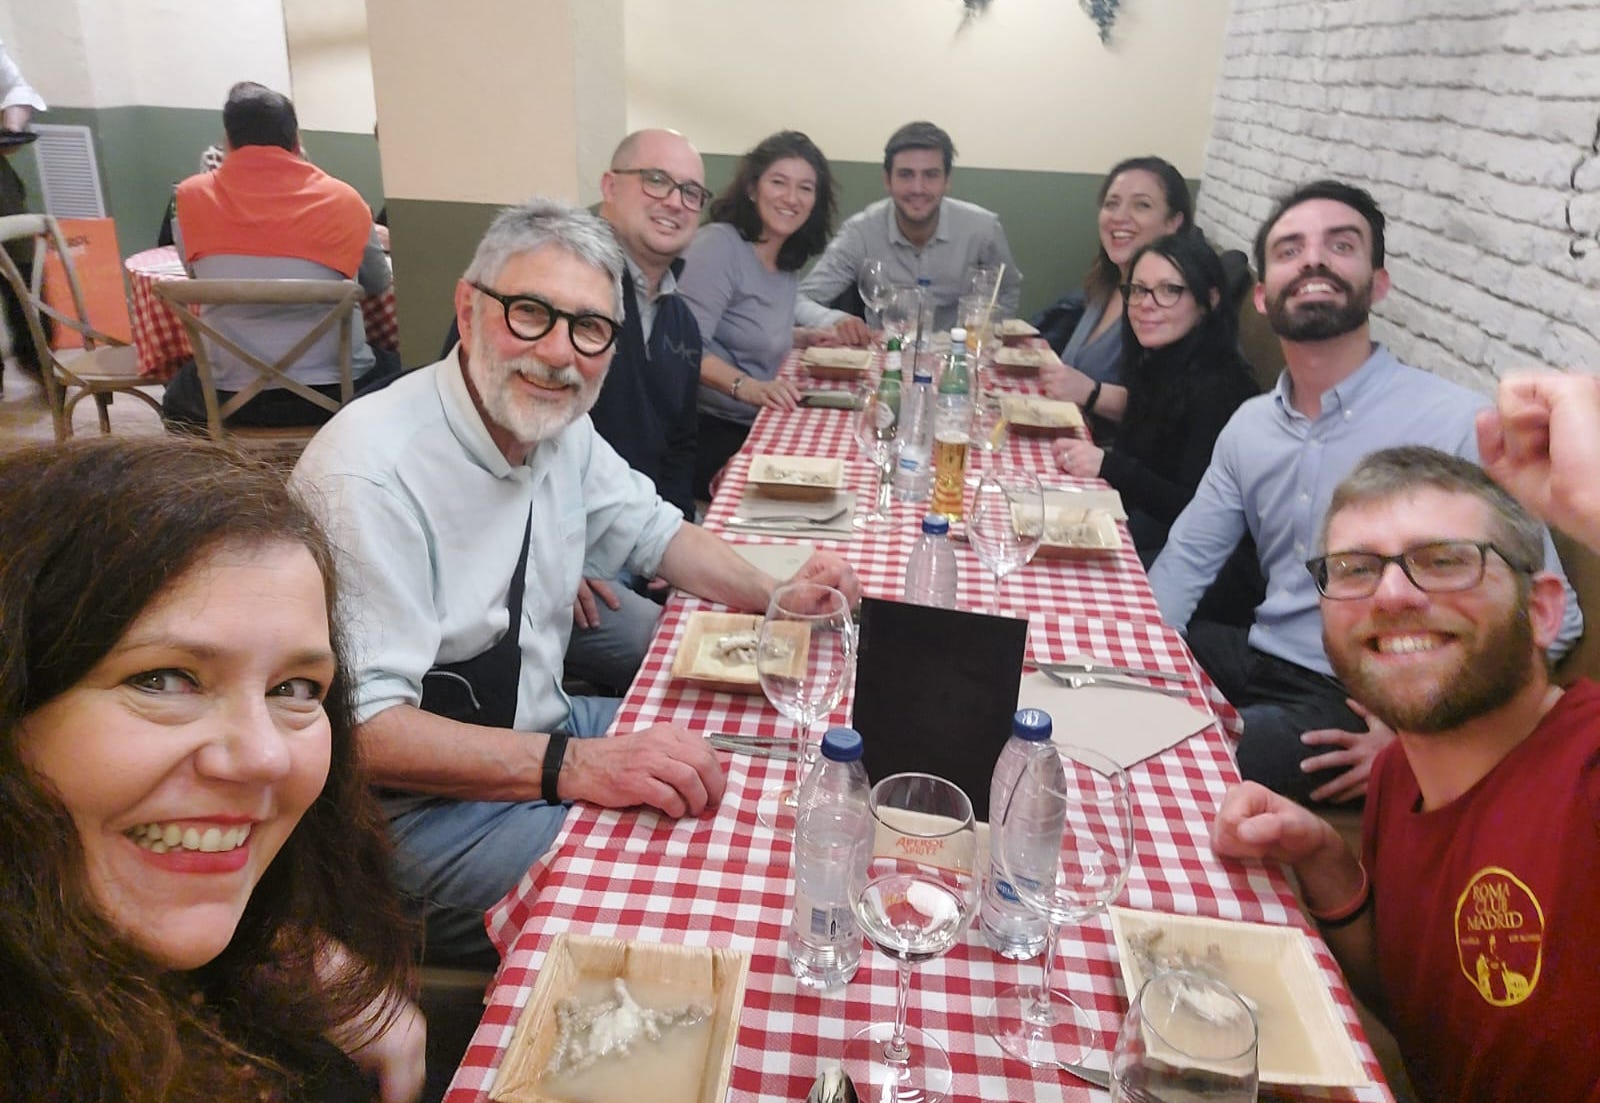 Una tavolata di emiliano-romagnoli ed ospiti durante la serata al Just Italia.